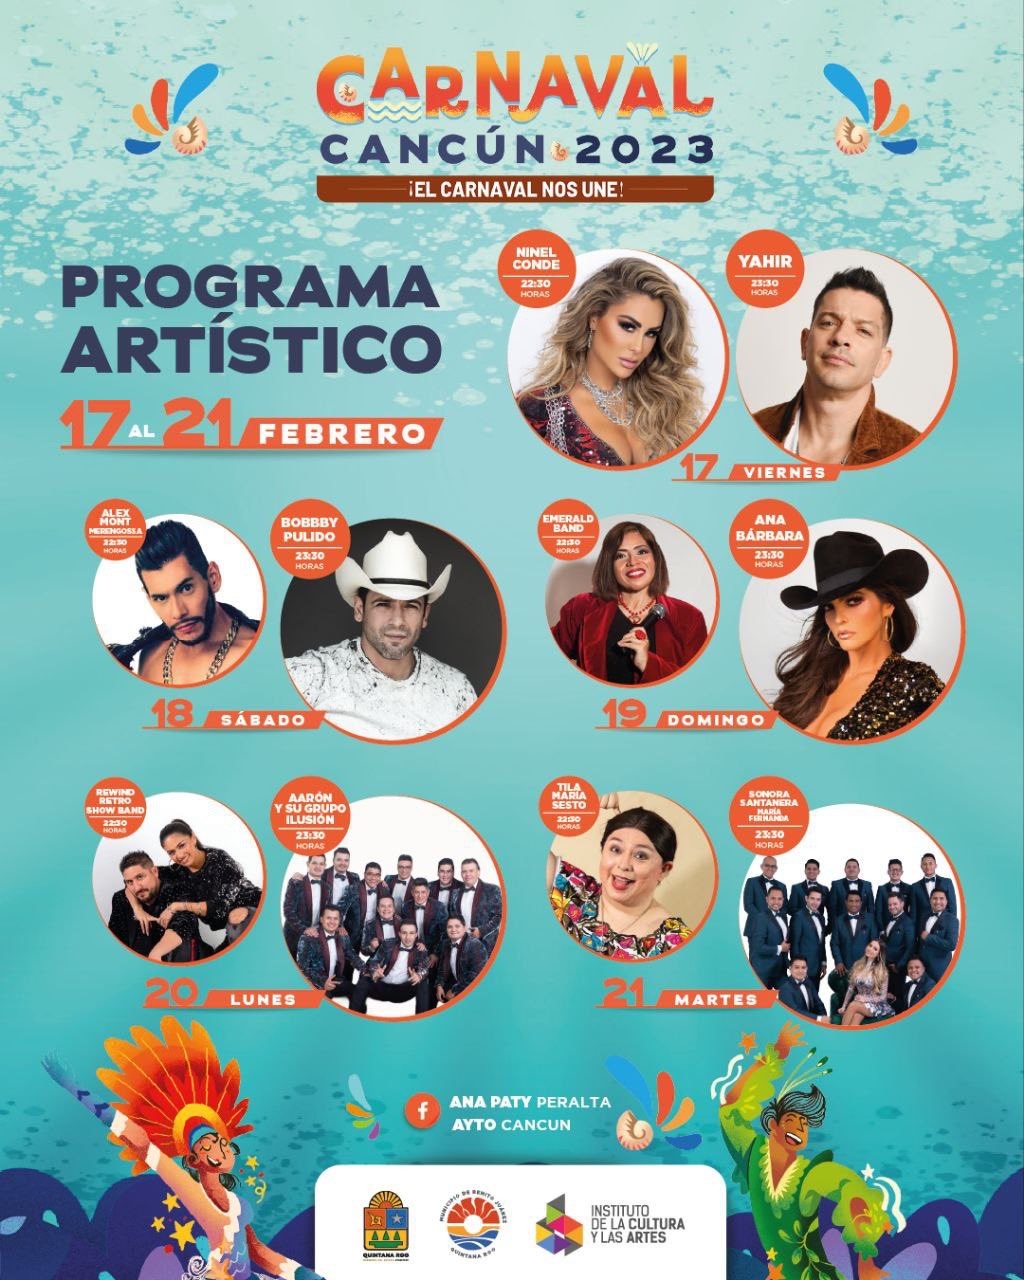 Ana Barbara, Yahir y Ninel Conde formaran parte del carnaval Cancún 2023.